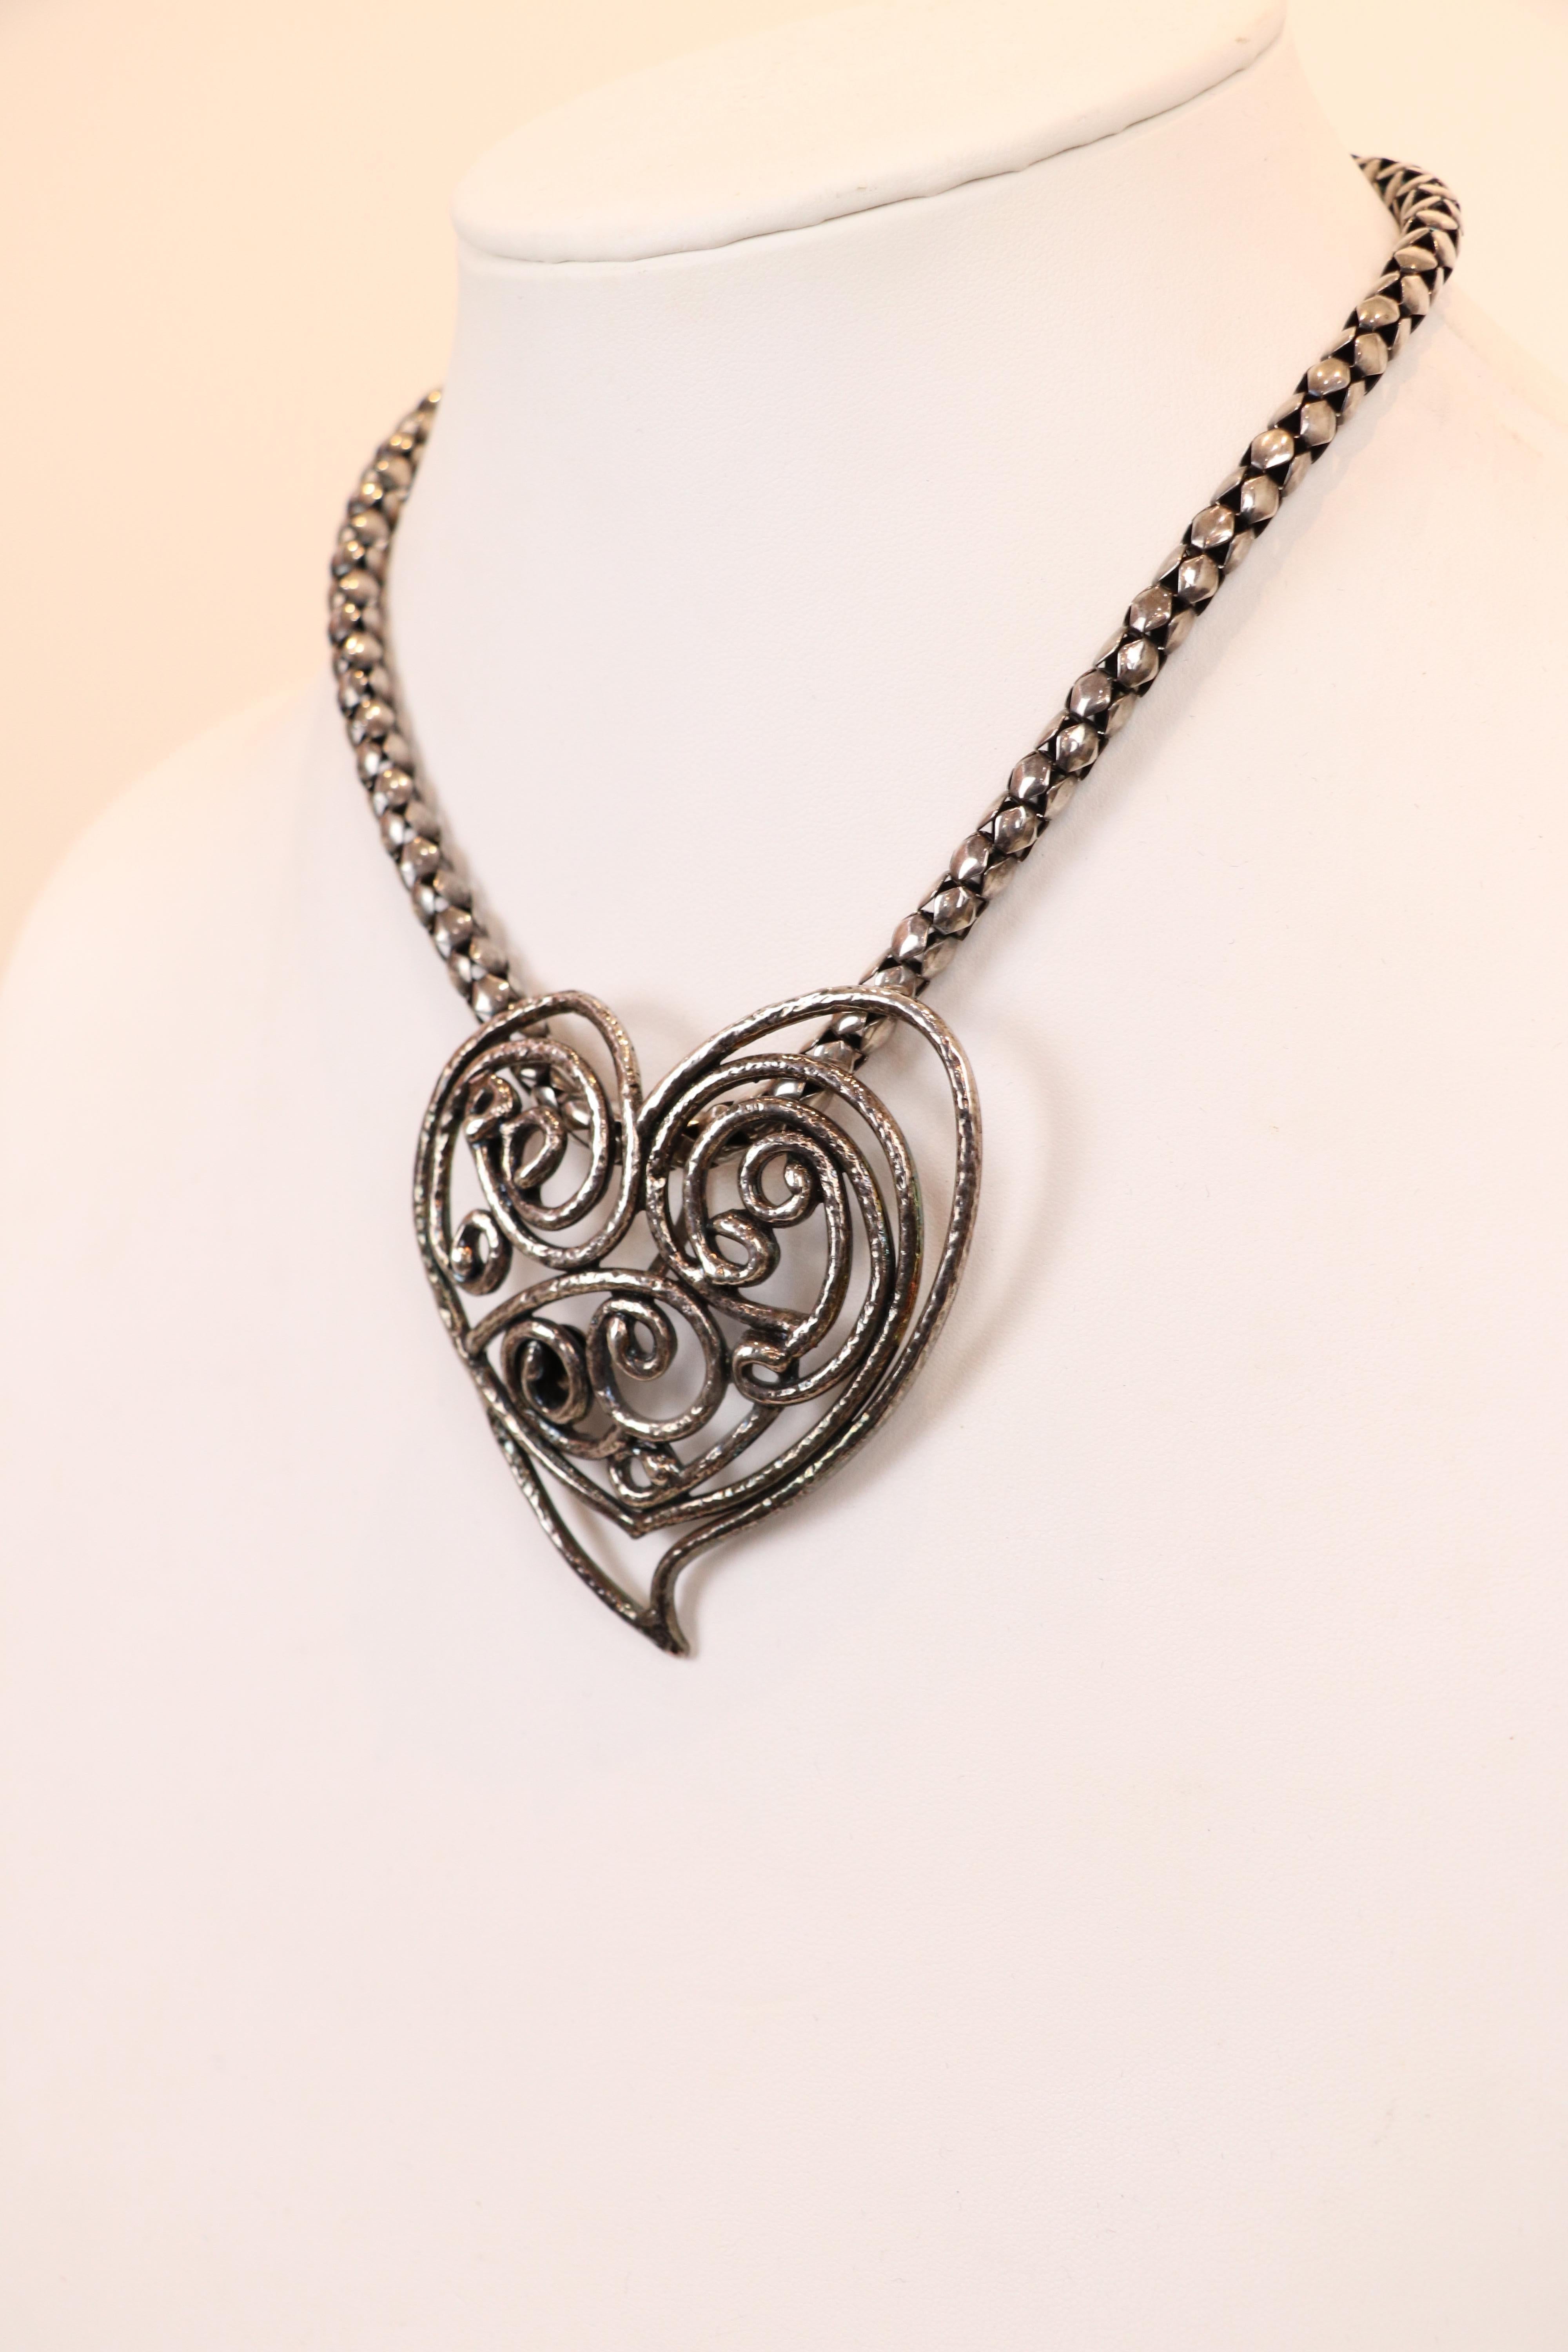 Le collier ras du cou vintage Yves Saint Laurent Rive Gauche des années 1980 comprend un pendentif en forme de cœur massif en argent sur une chaîne serpent en argent avec un fermoir à crochets. Le métal présente une patine vieillie et un motif